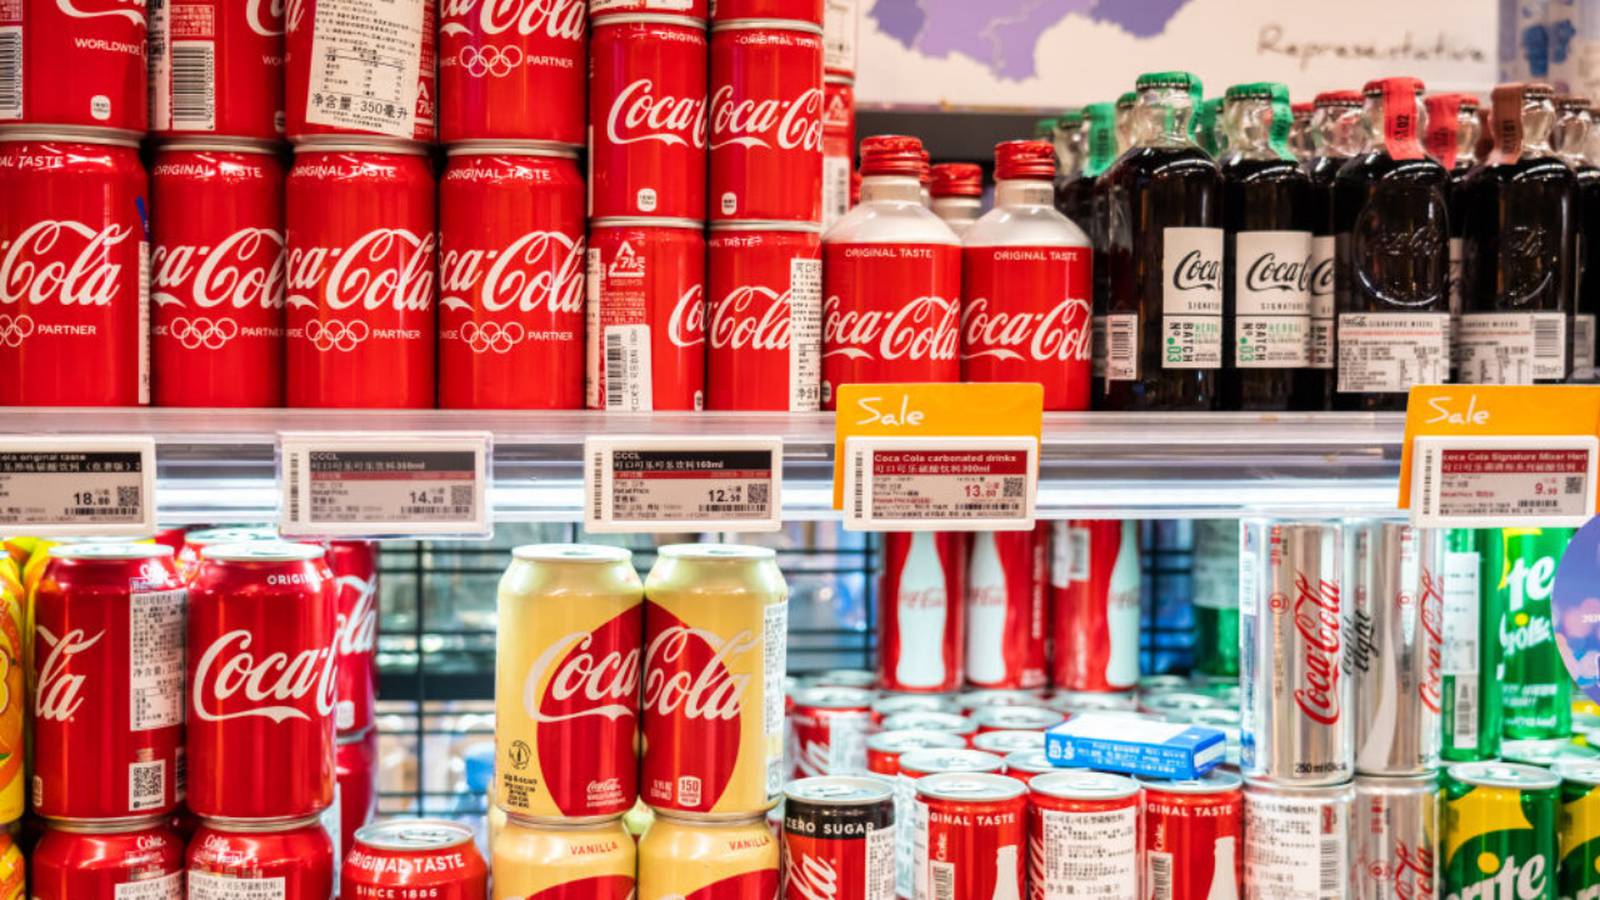 2. Farmfoods Coca-Cola Deals - wide 6